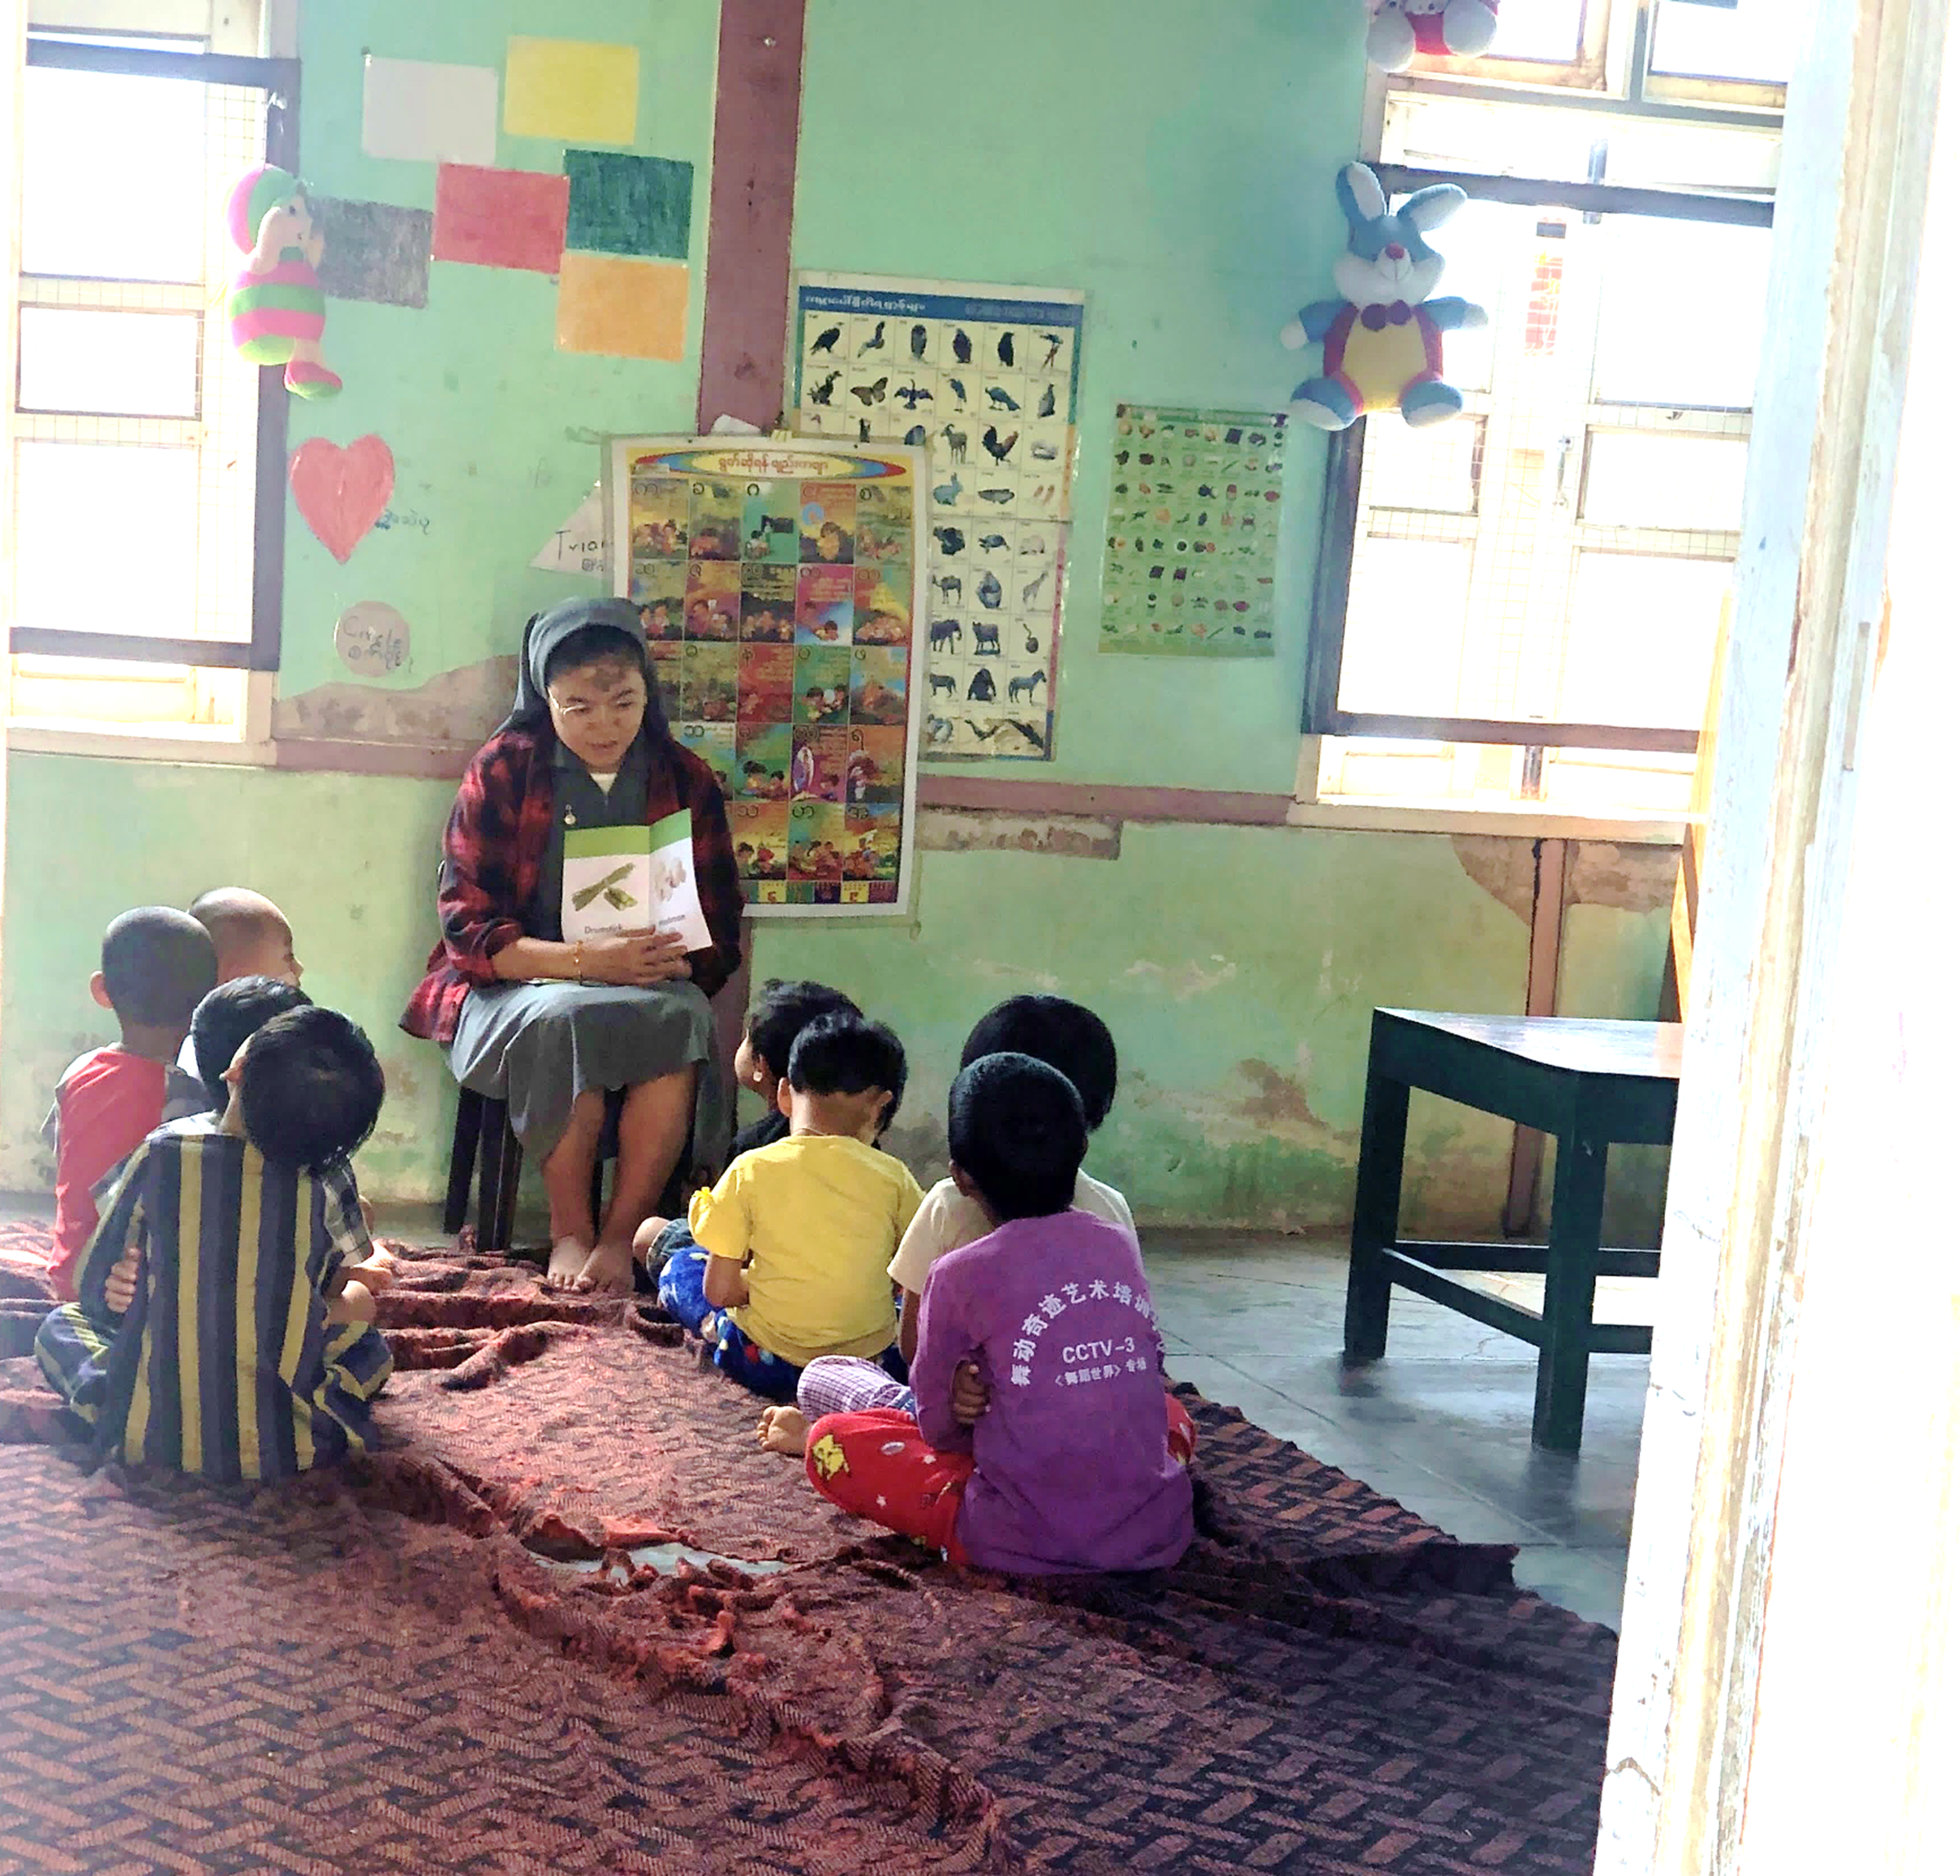 Maternelles Montessori Birmanie